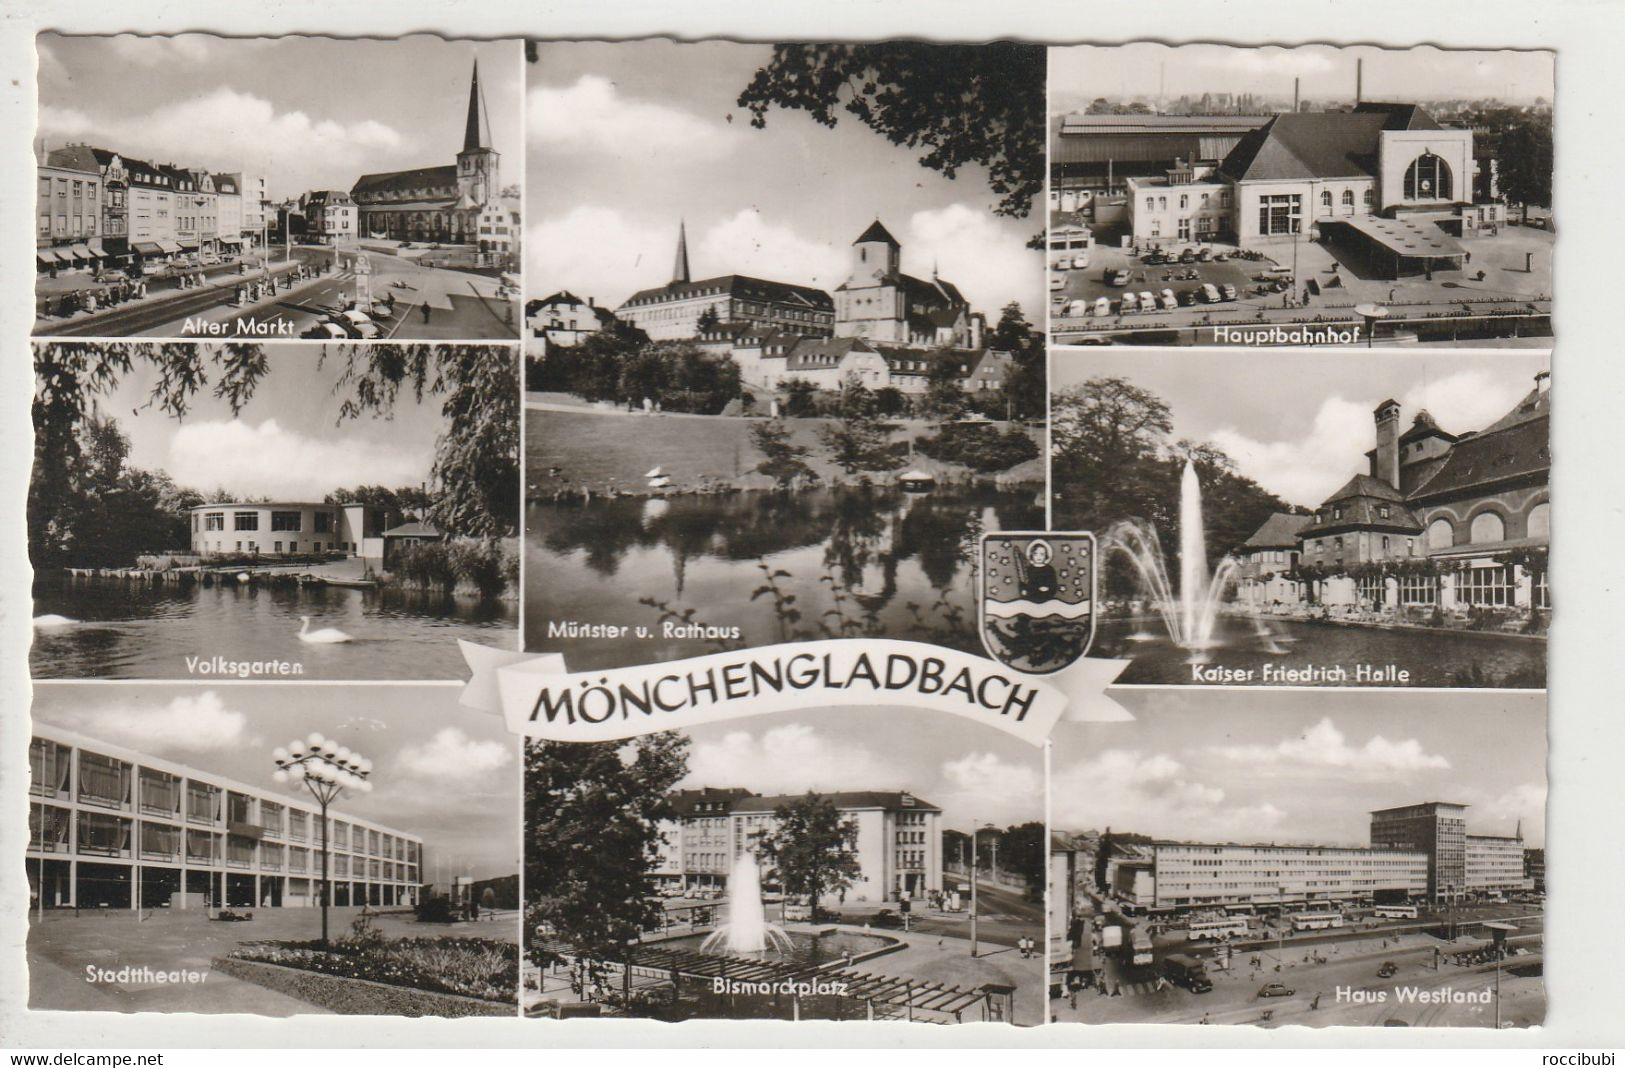 Mönchengladbach, Nordrhein-Westfalen - Mönchengladbach